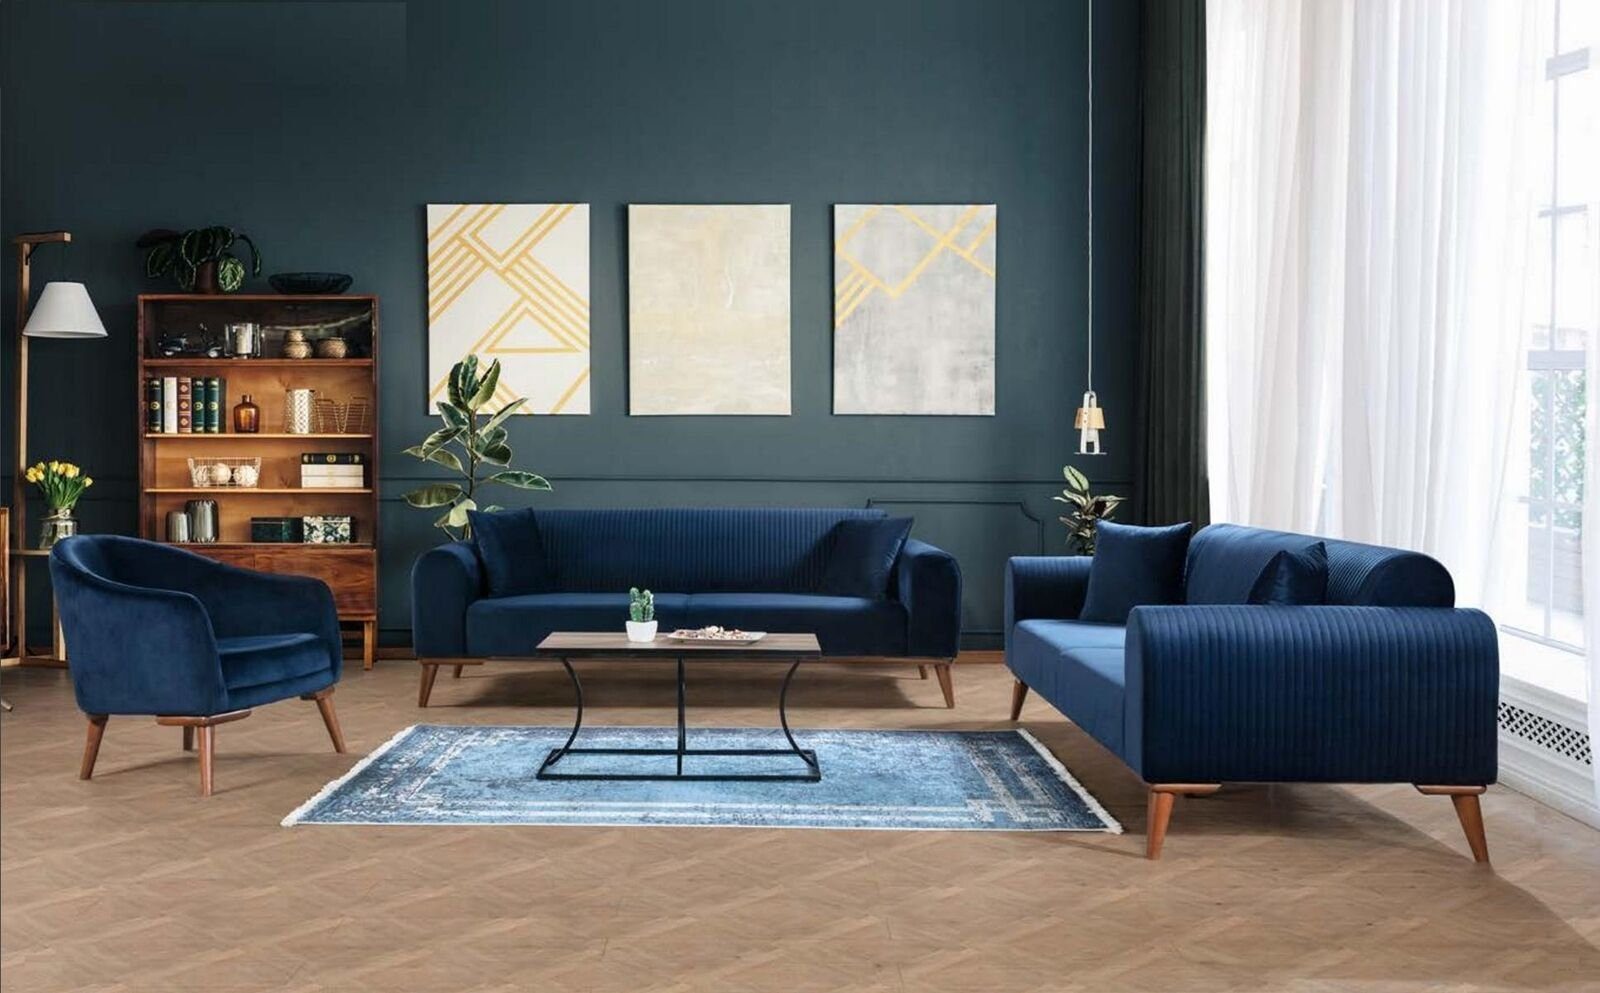 JVmoebel Sofa Luxus Europe Stoff Textil, Moderne Made Blau in Dreisitzer Couchen Couch Möbel Polster